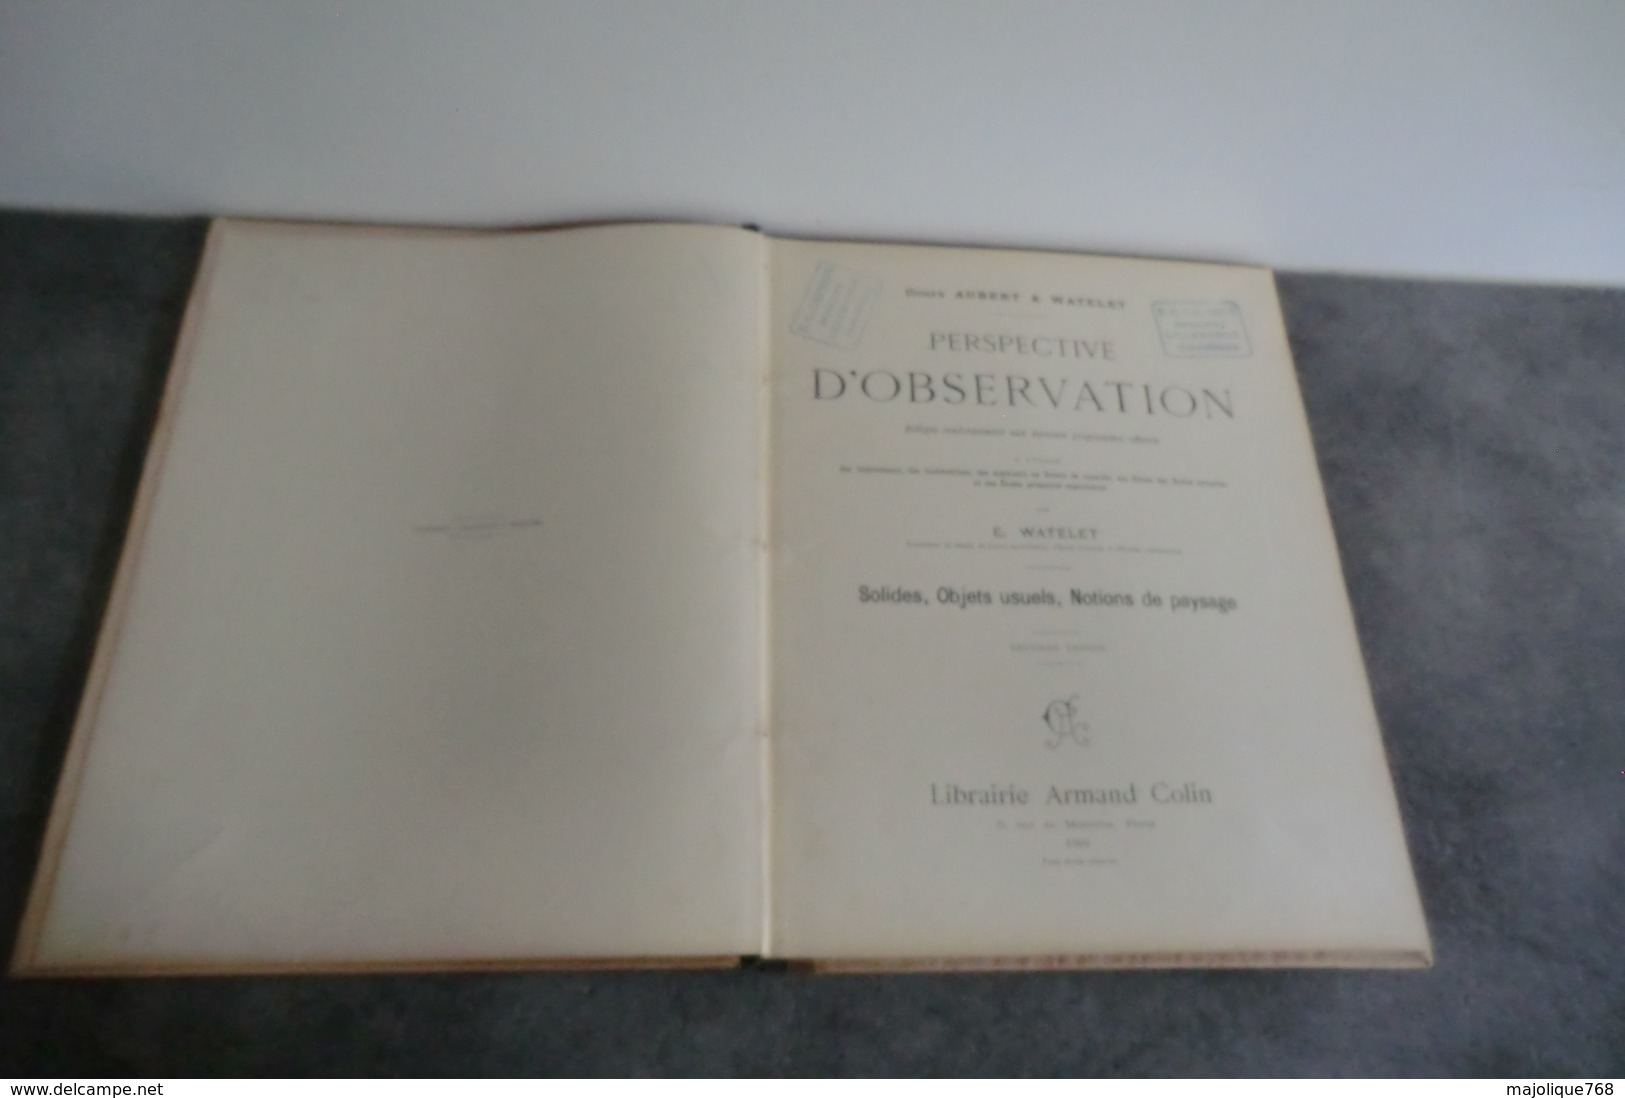 Perspective D'observation Cours Aubert & Watelet - Librairie Armand Colin Paris 1900 - - 18 Ans Et Plus